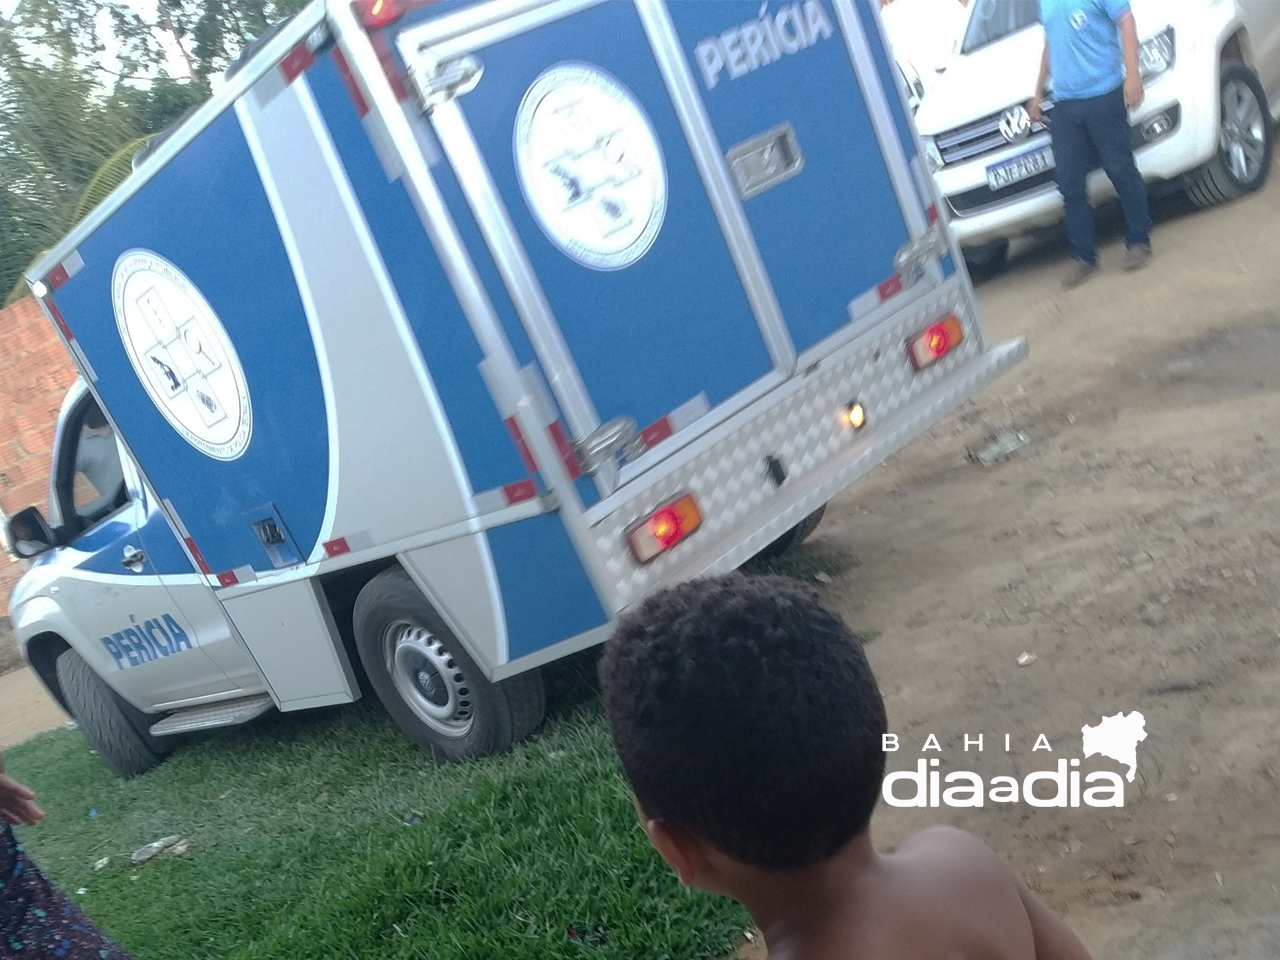 Corpo de jovem com transtorno mental  encontrado no bairro Pereiro em Itabela. (Foto: BAHIA DIA A DIA)